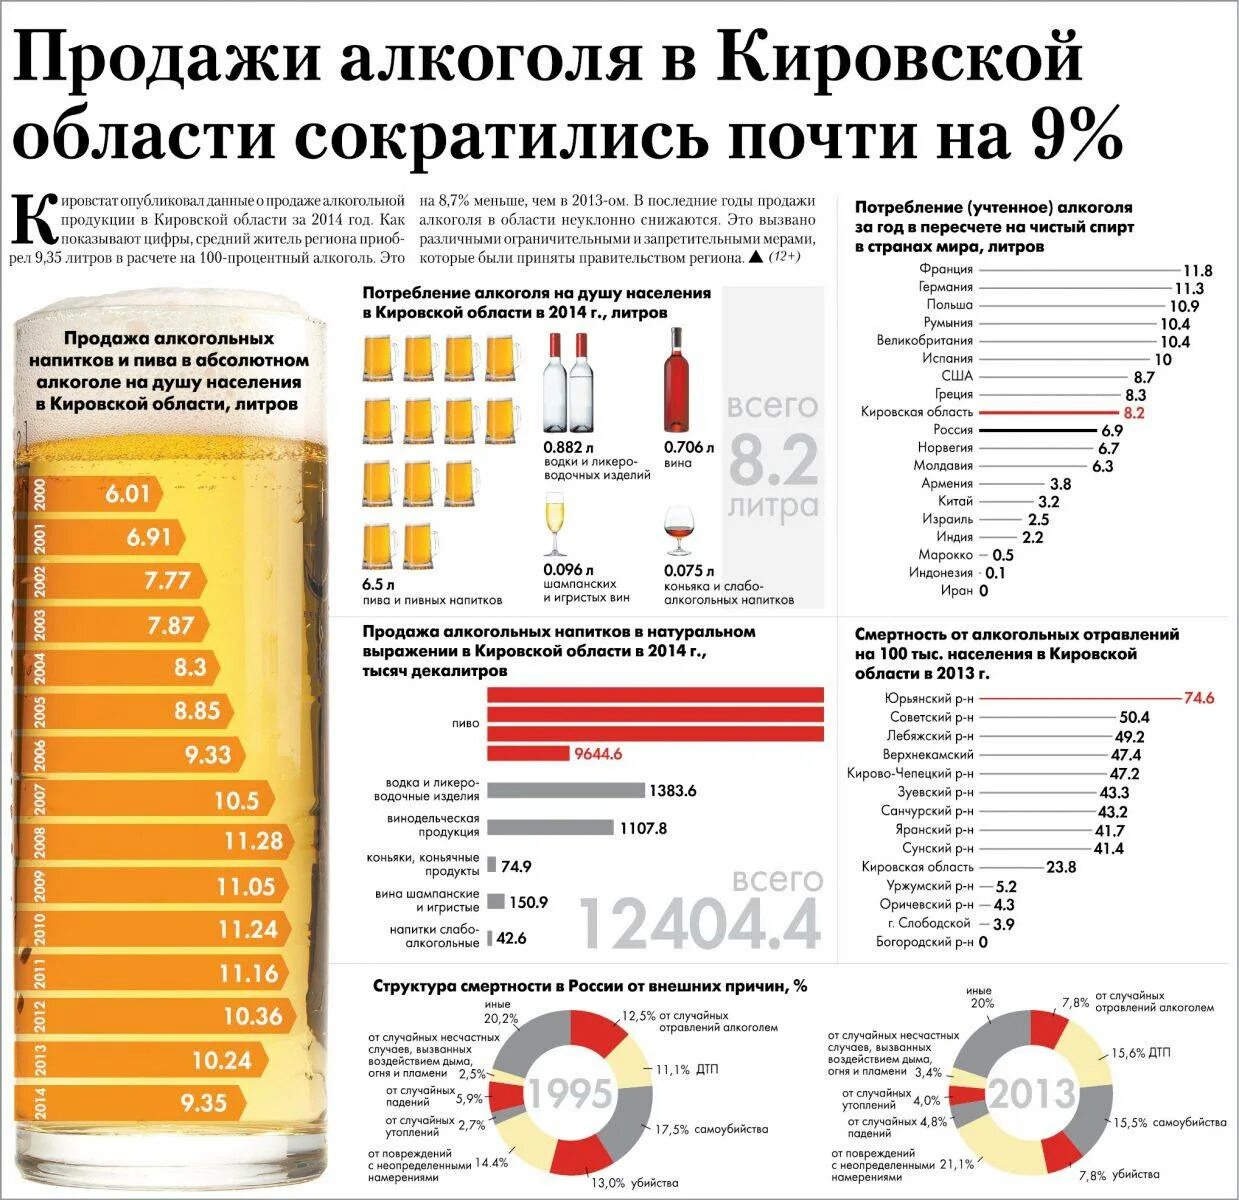 Статистика употребления алкогольной продукции.